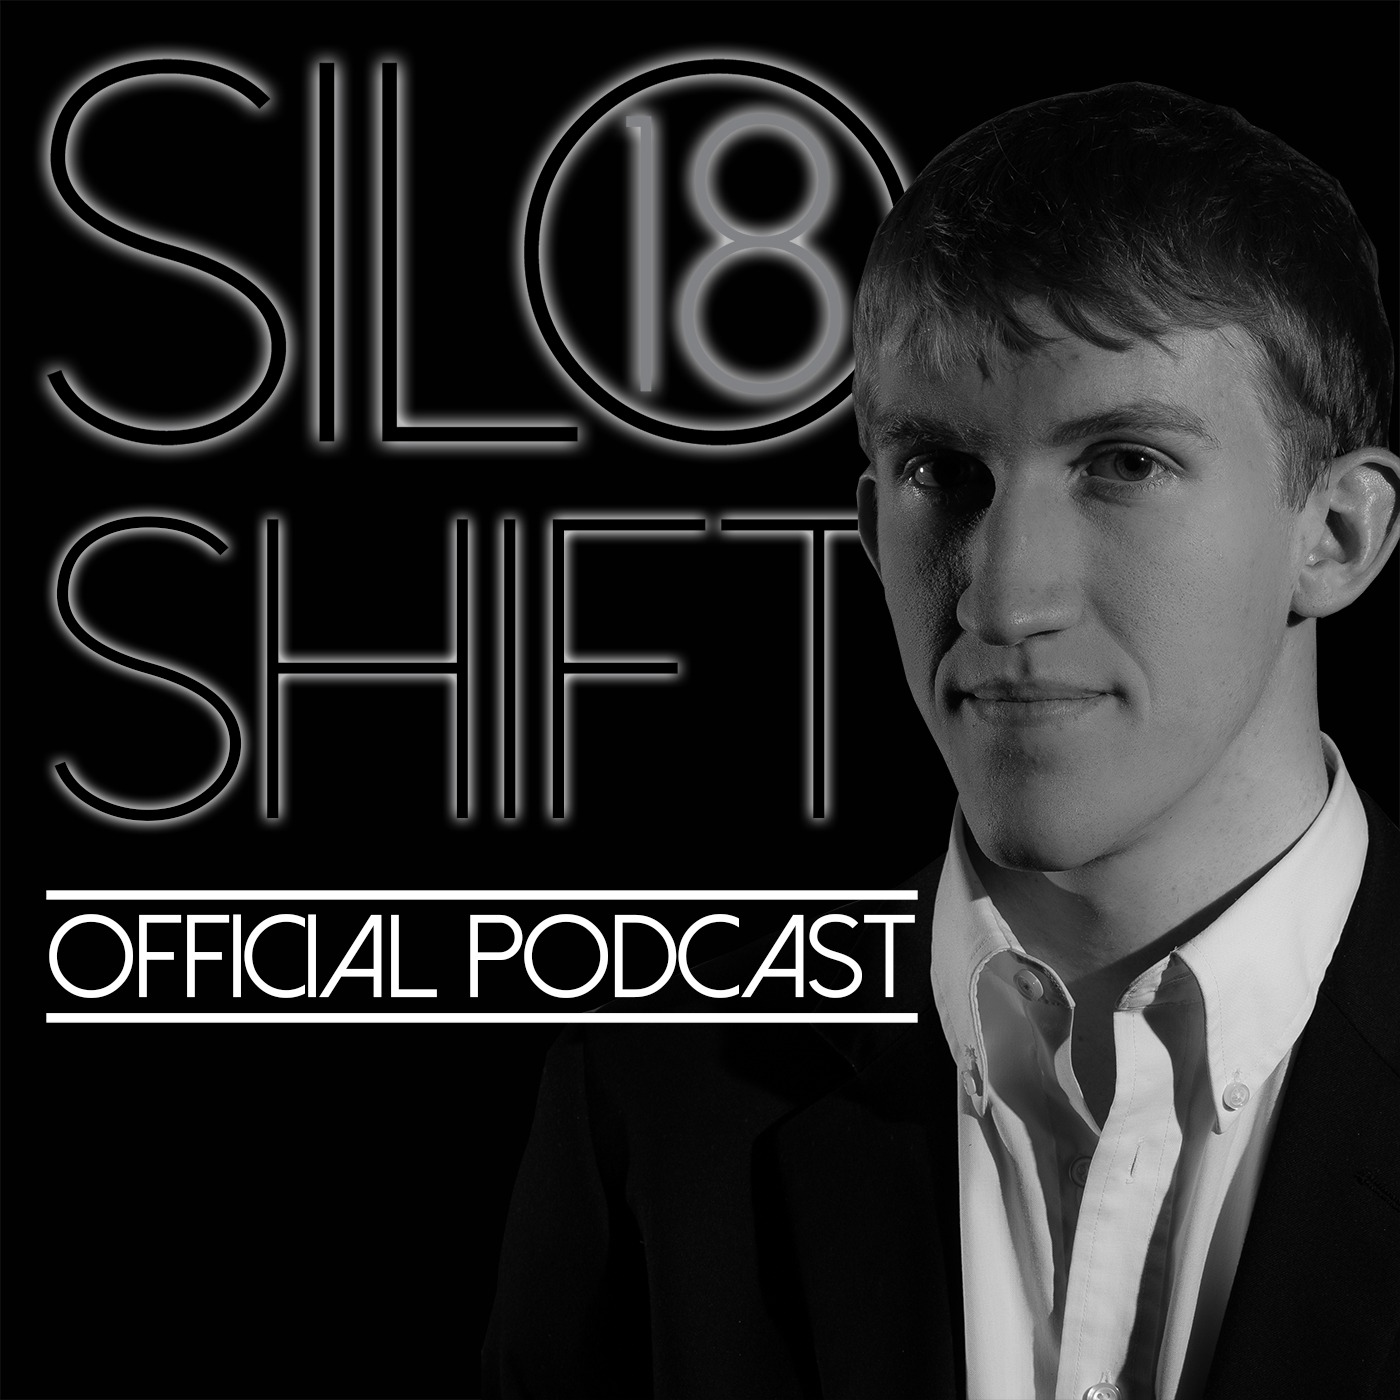 Silo-18's Shift